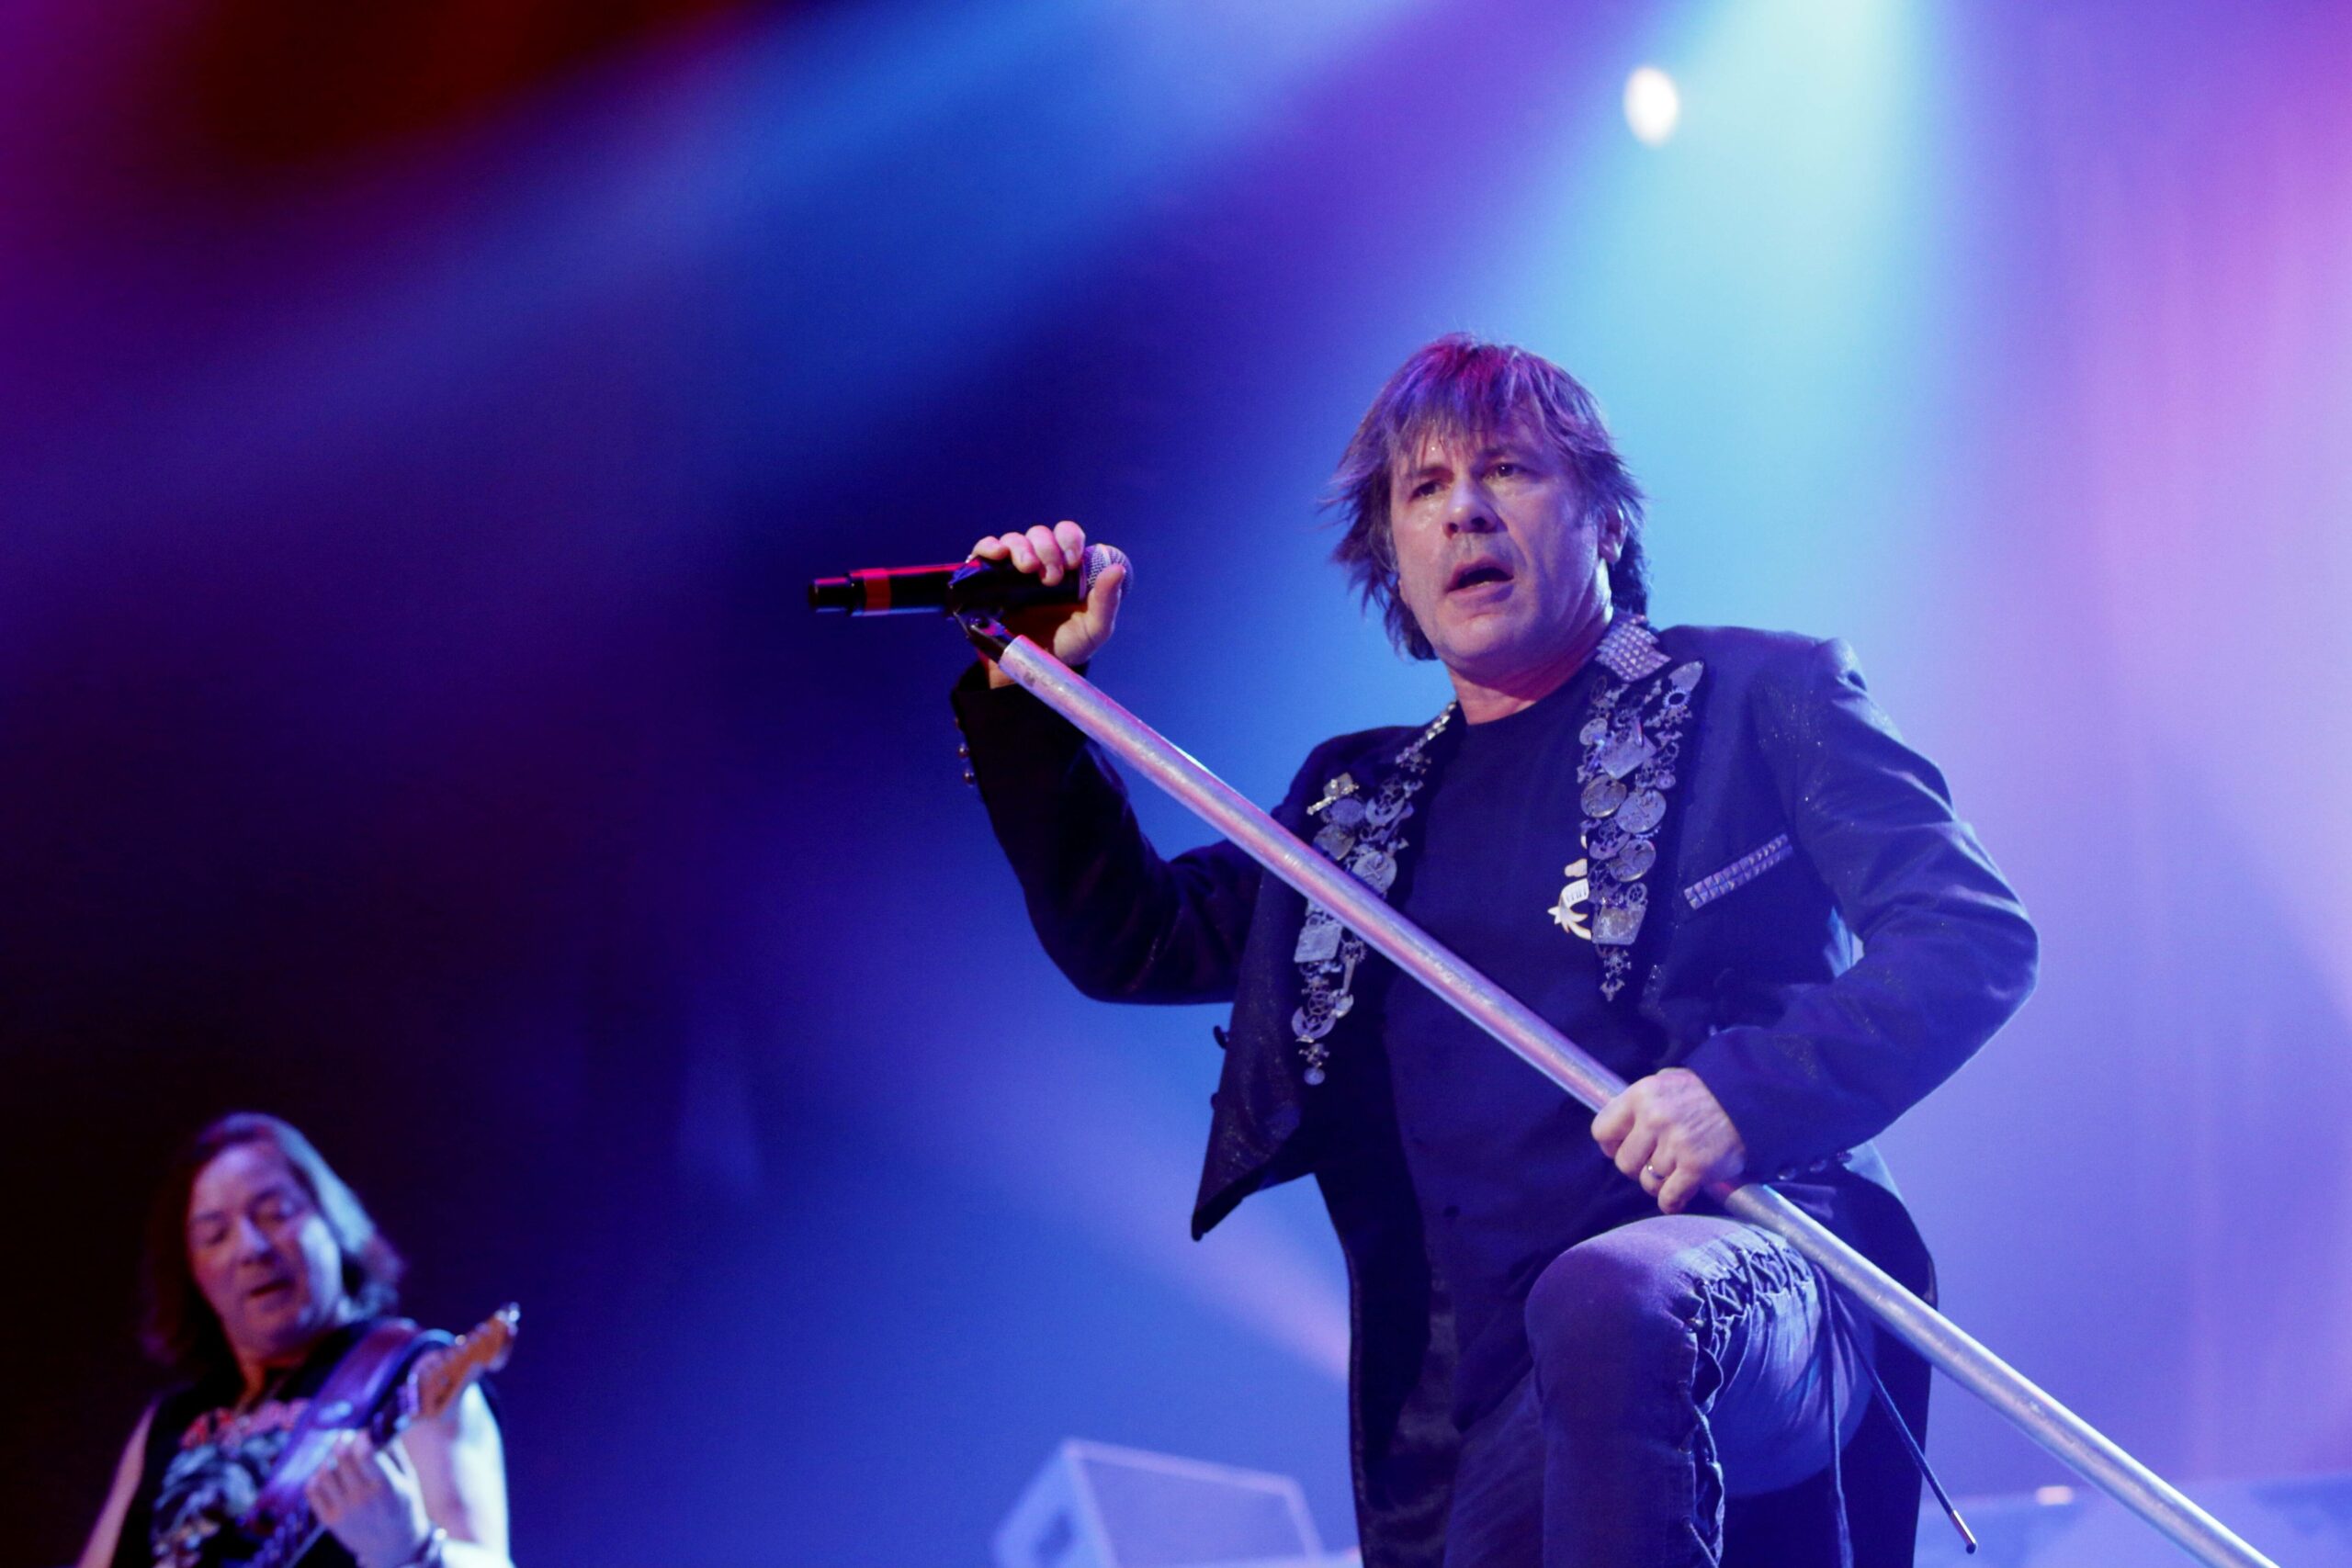 Iron Maiden um Sänger Bruce Dickinson spielen im Juni ein Konzert in Hannover. (Archivbild)